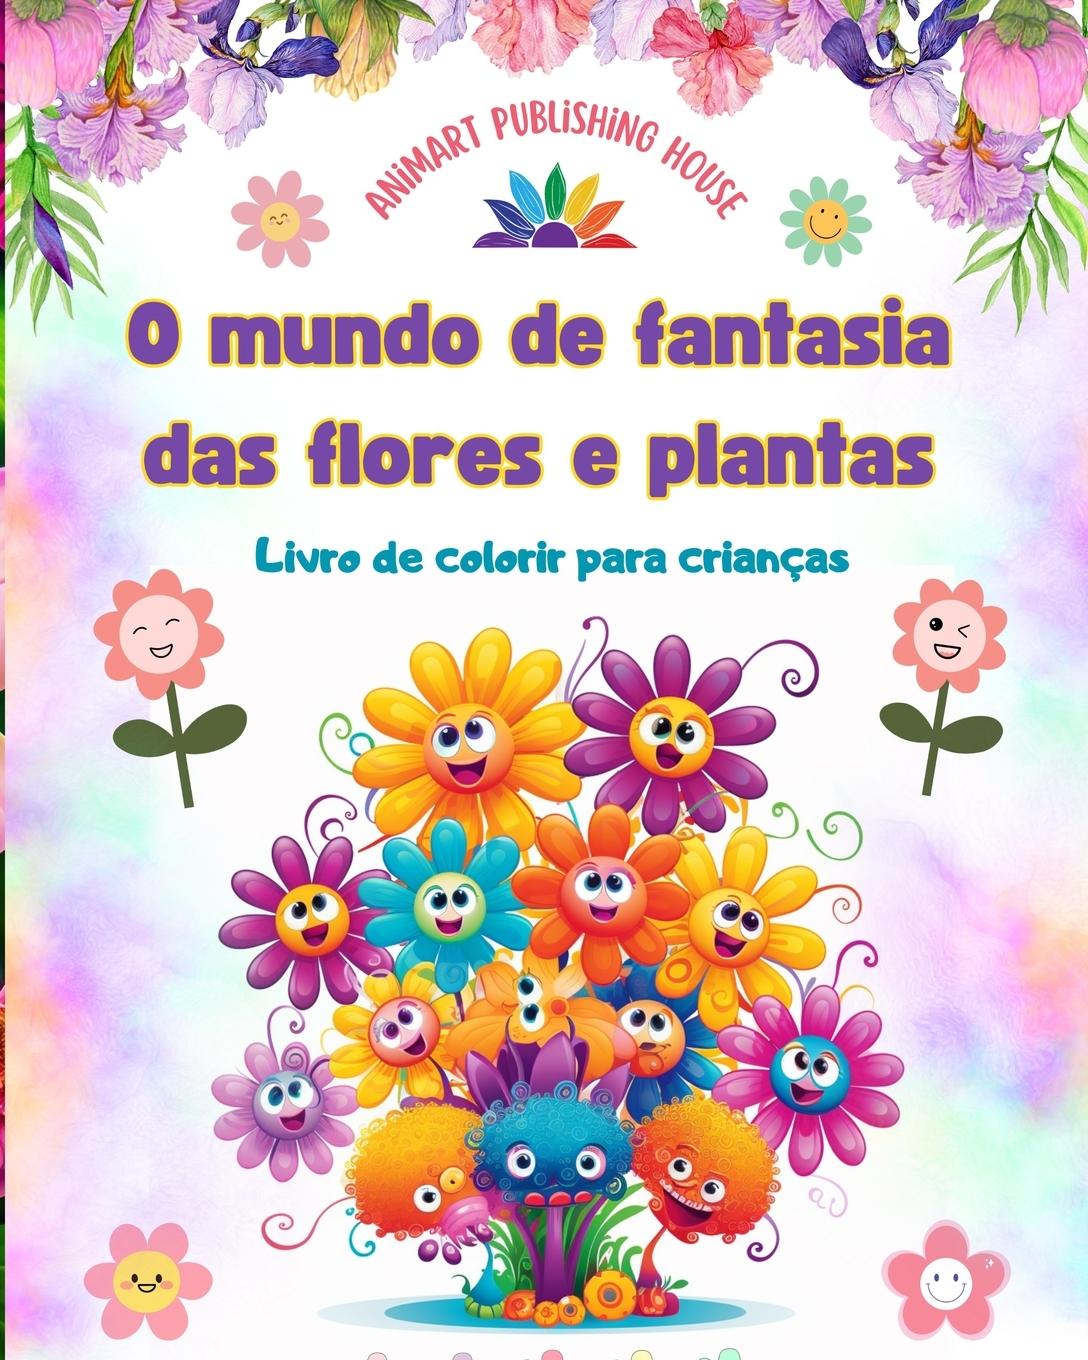 Knjiga O mundo de fantasia das flores e plantas - Livro de colorir para crianças - As criaturas mais adoráveis da natureza 